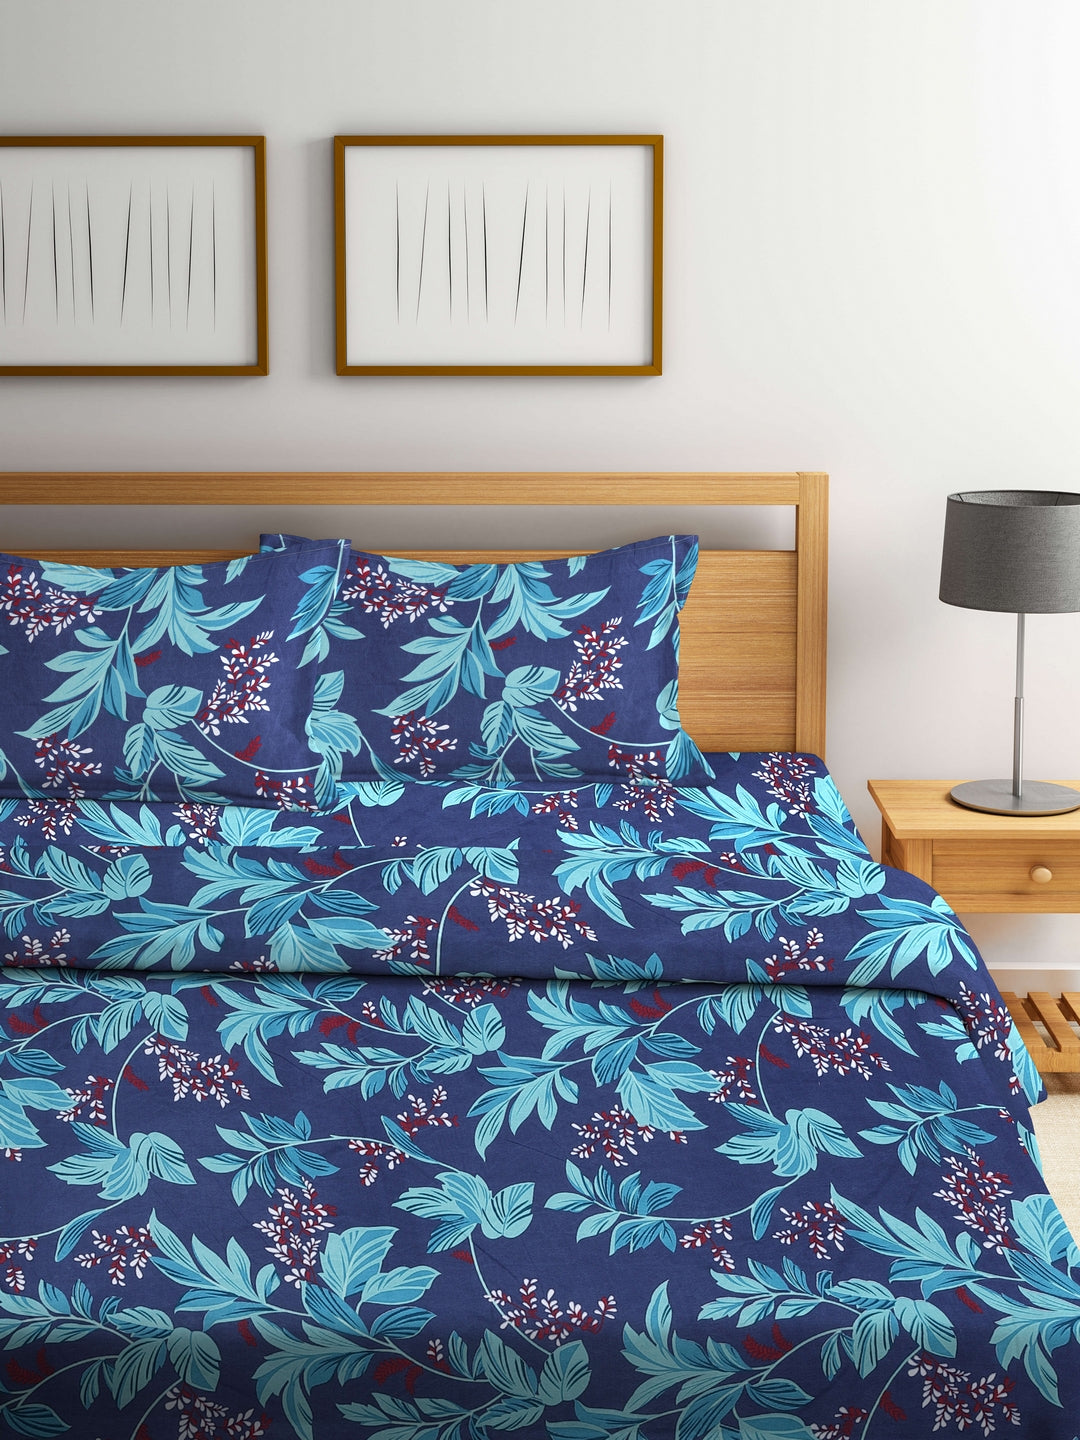 Arrabi Blue Leaf TC Cotton Blend Double Size Comforter Bedding Set with 2 Pillow Cover